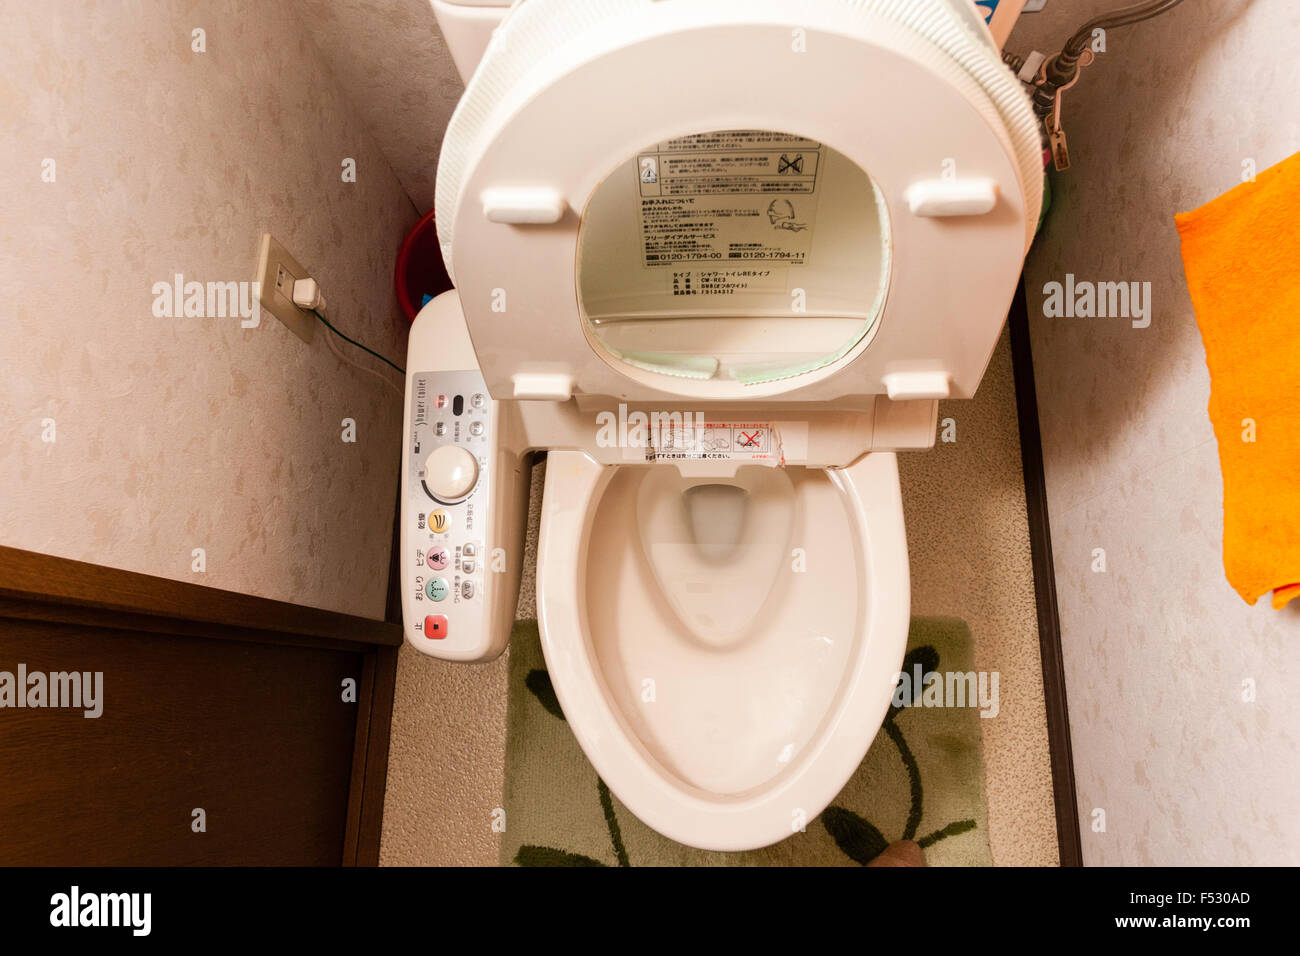 Toilette japonaise photo stock. Image du japon, coréen - 24840948